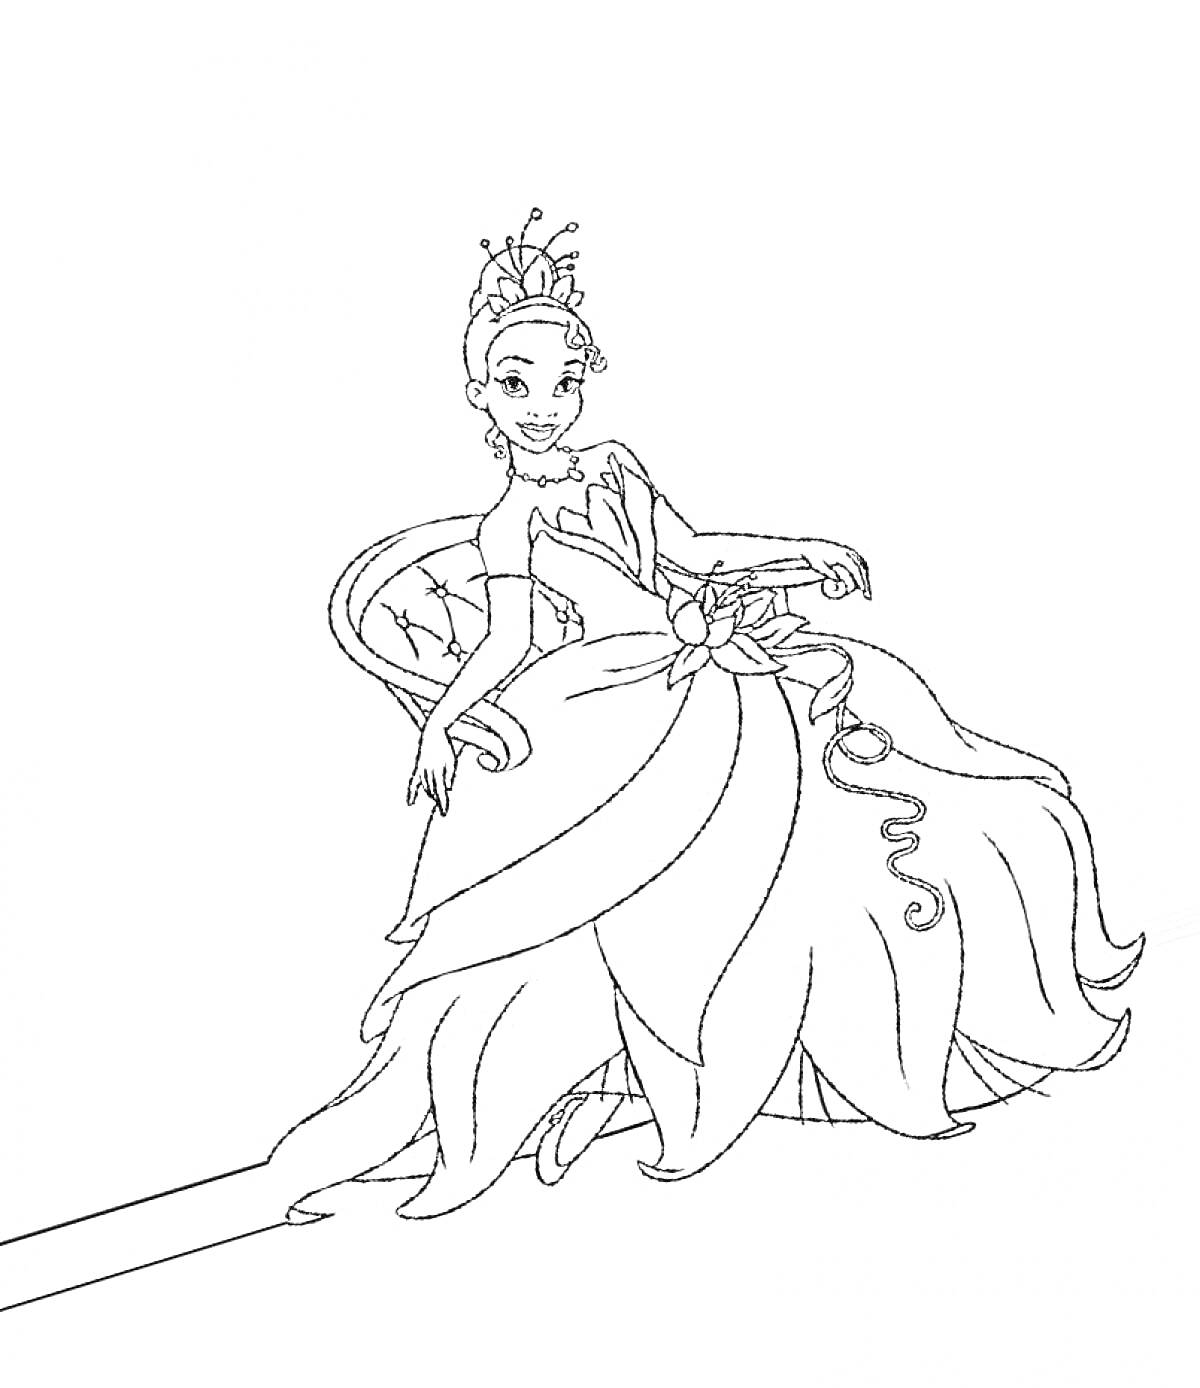 Принцесса в кресле с цветком на платье